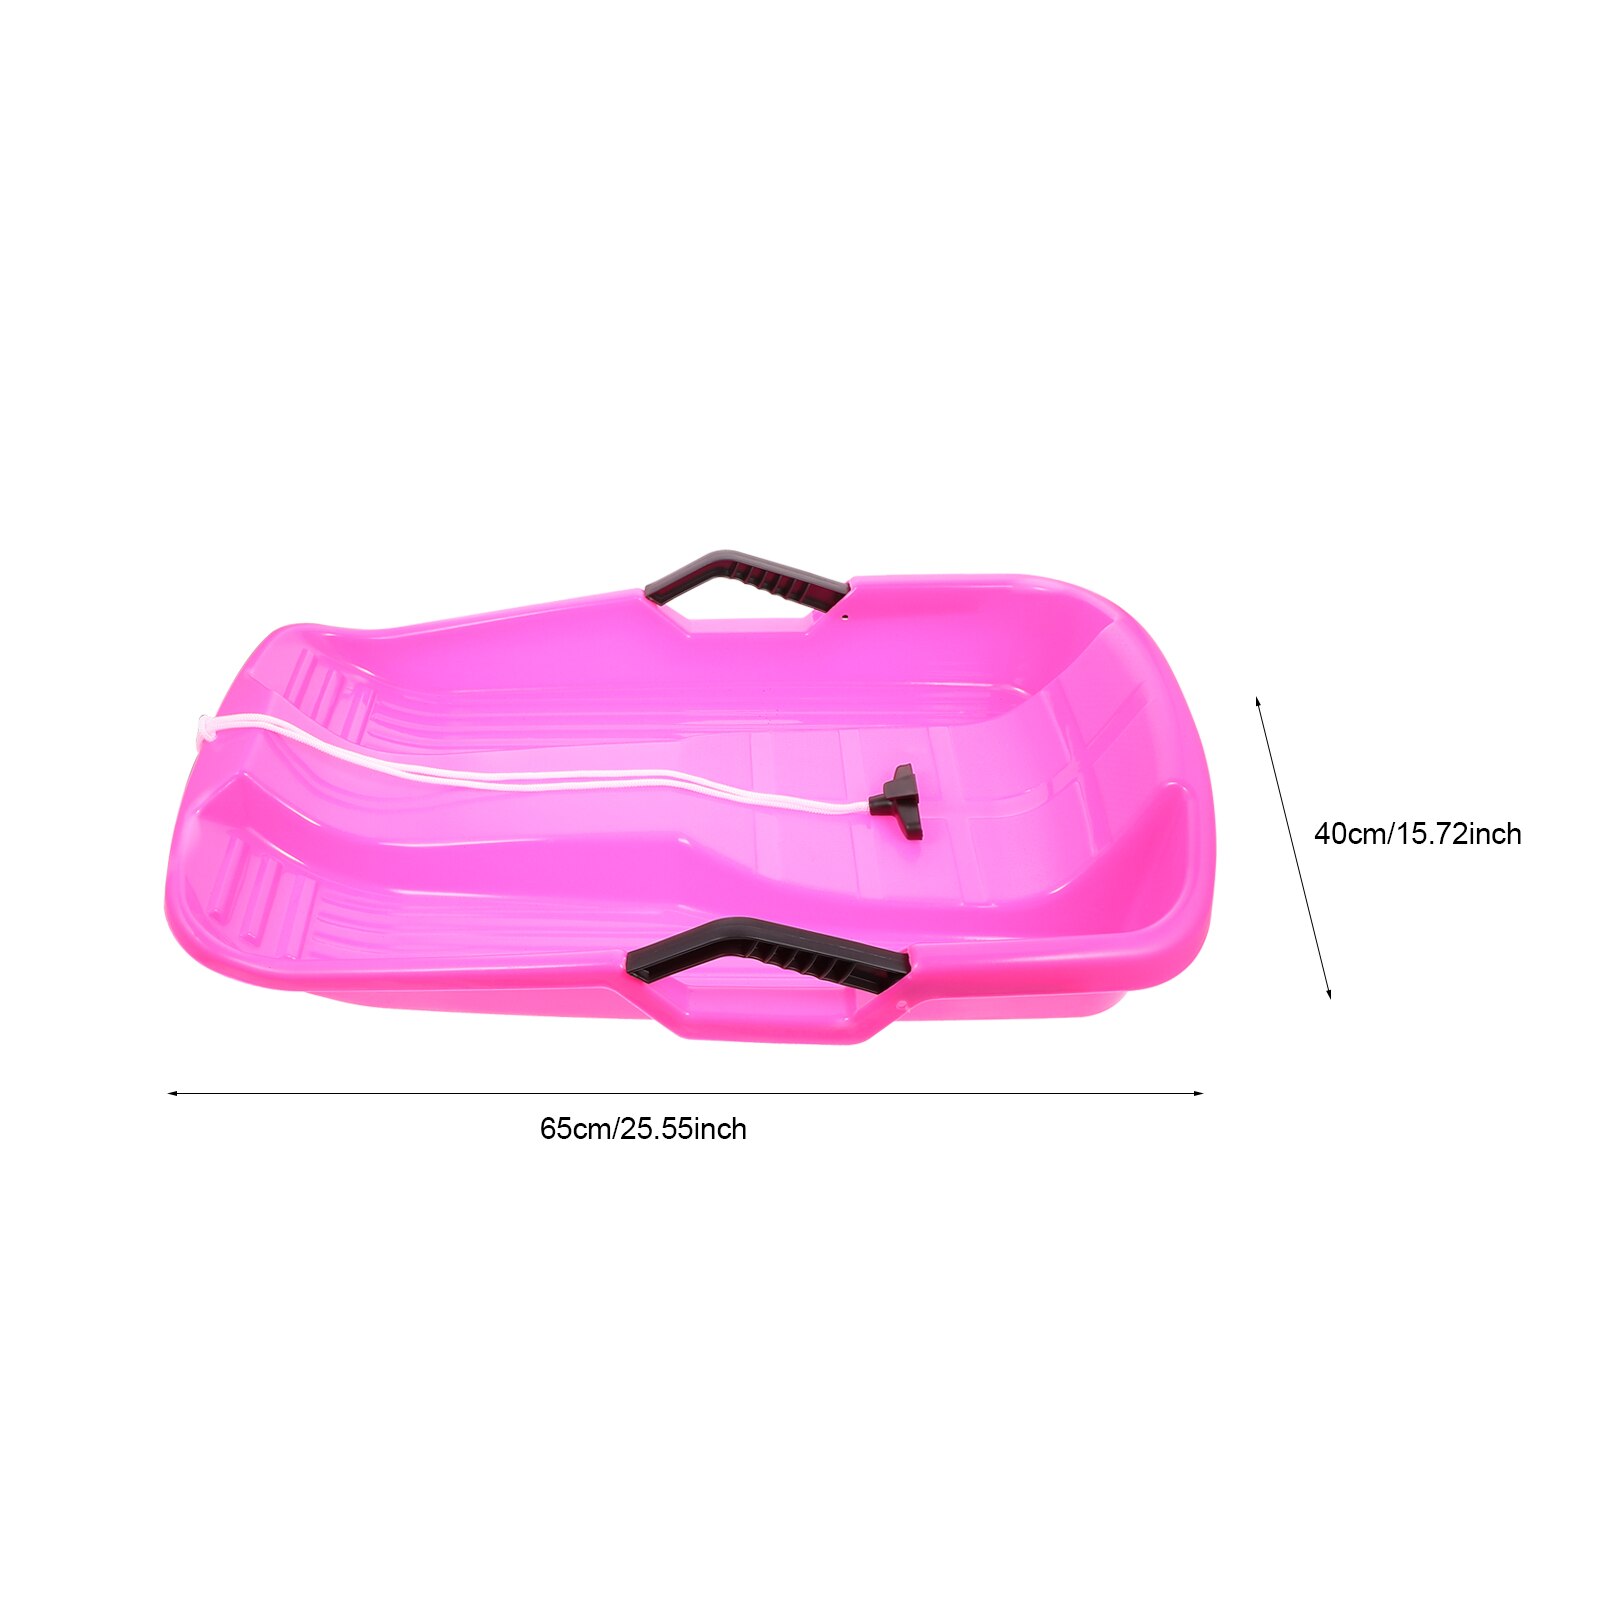 Slitta da neve in plastica per bambini e adulti: Colore rosa